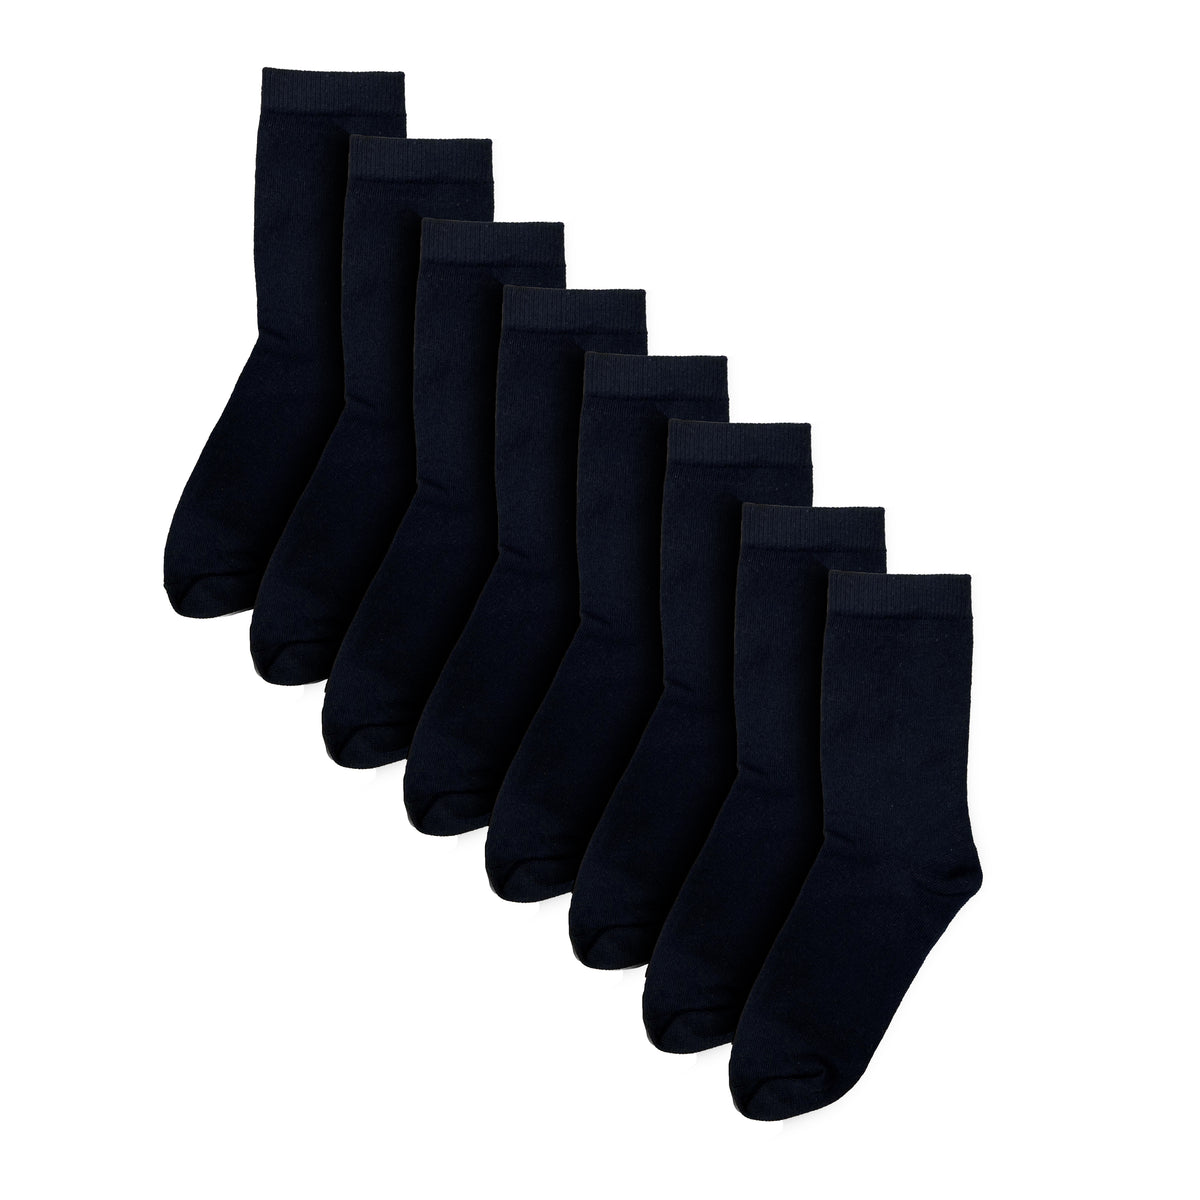 Black Socks 8 pack